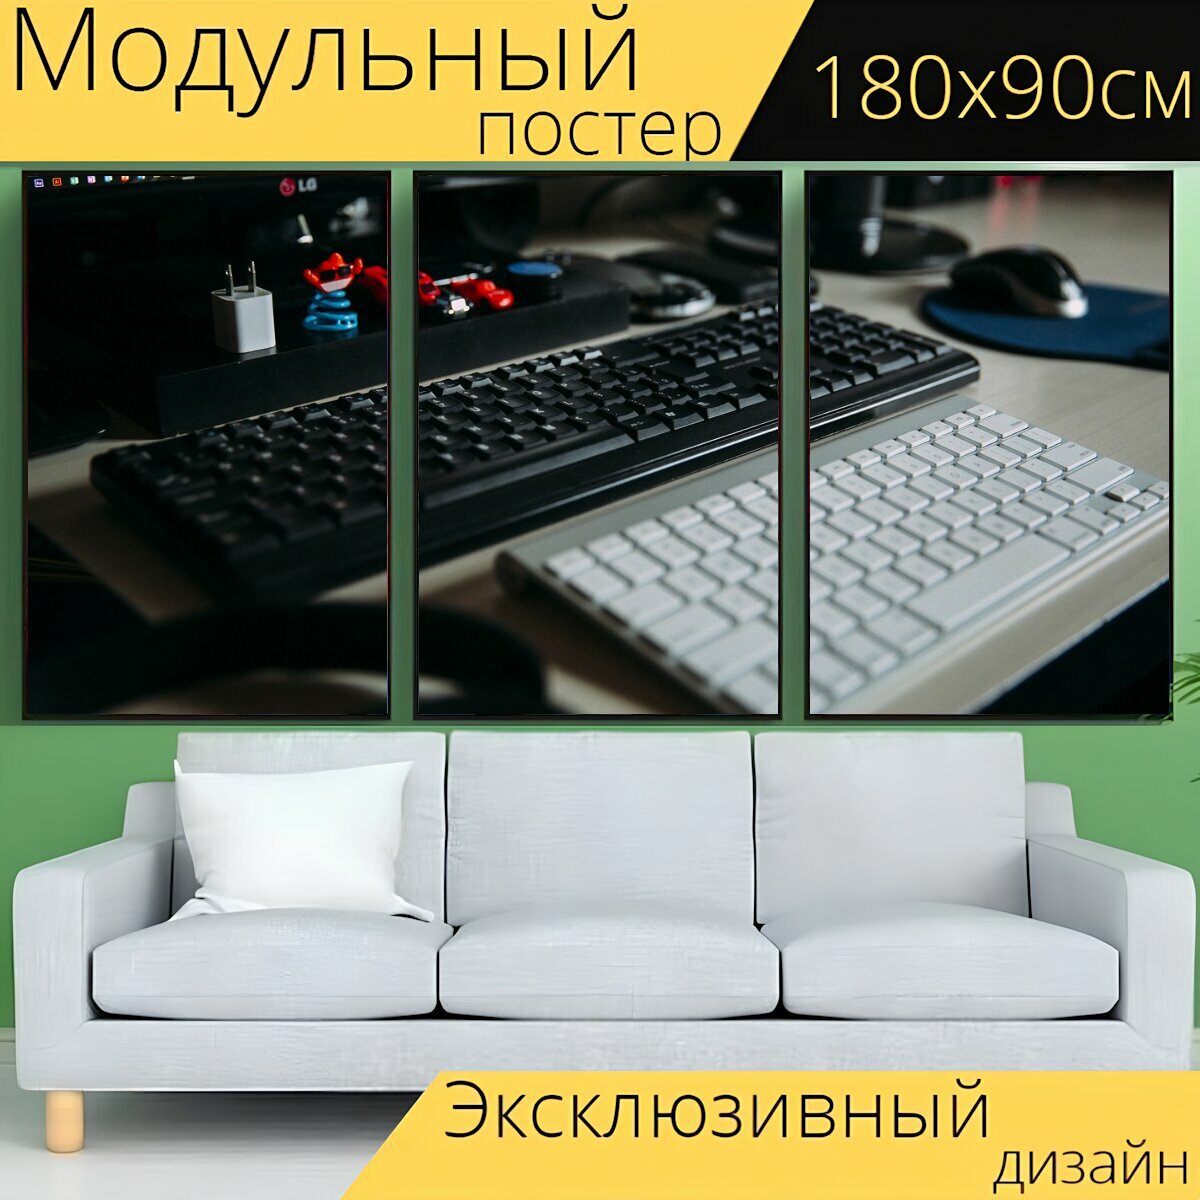 Модульный постер "Офис, стол письменный, клавиатура" 180 x 90 см. для интерьера